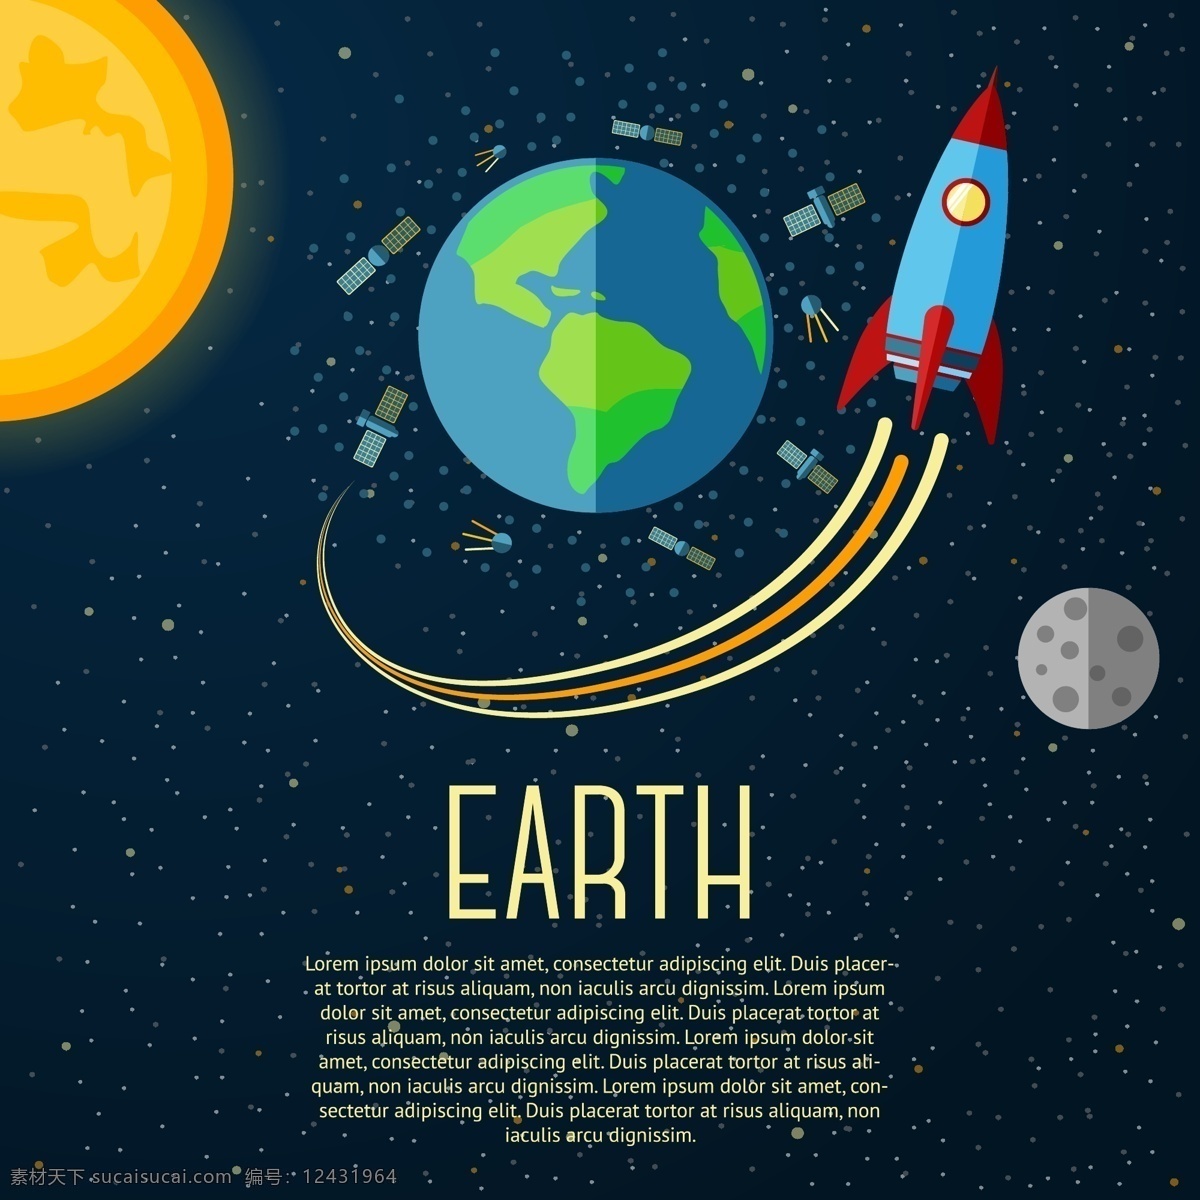 宇宙 中 星球 卫星 飞升 火箭 太空 太阳系 行星 星系 地球 太阳 星空 空间 小行星 探索 科学 天文学 球体 卡通插画 商务金融 商业插画